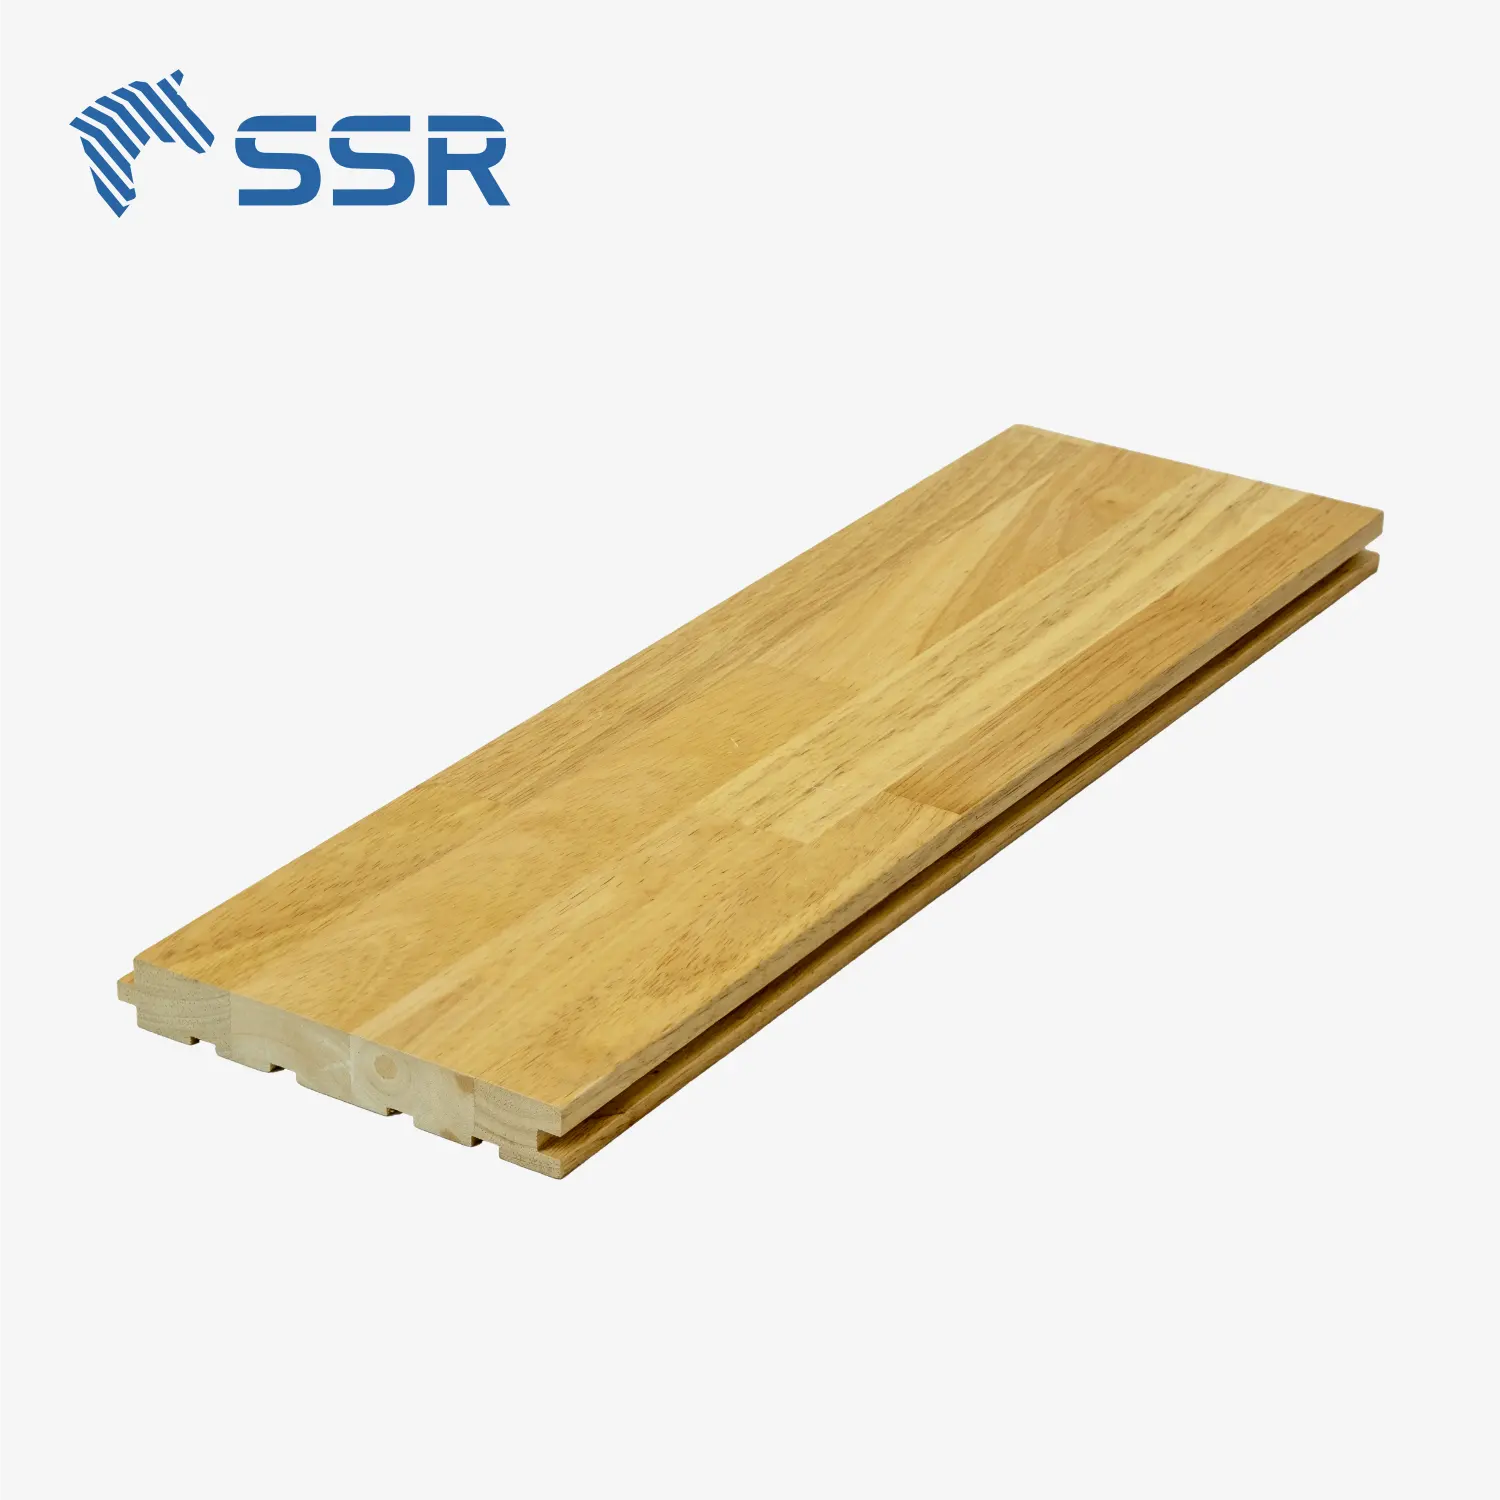 सर विना-एसिया/रबरवुड/सेन सिमेवा लकड़ी के फर्श-उंगली लकड़ी के फर्श-उंगली लकड़ी के फर्श पर शामिल